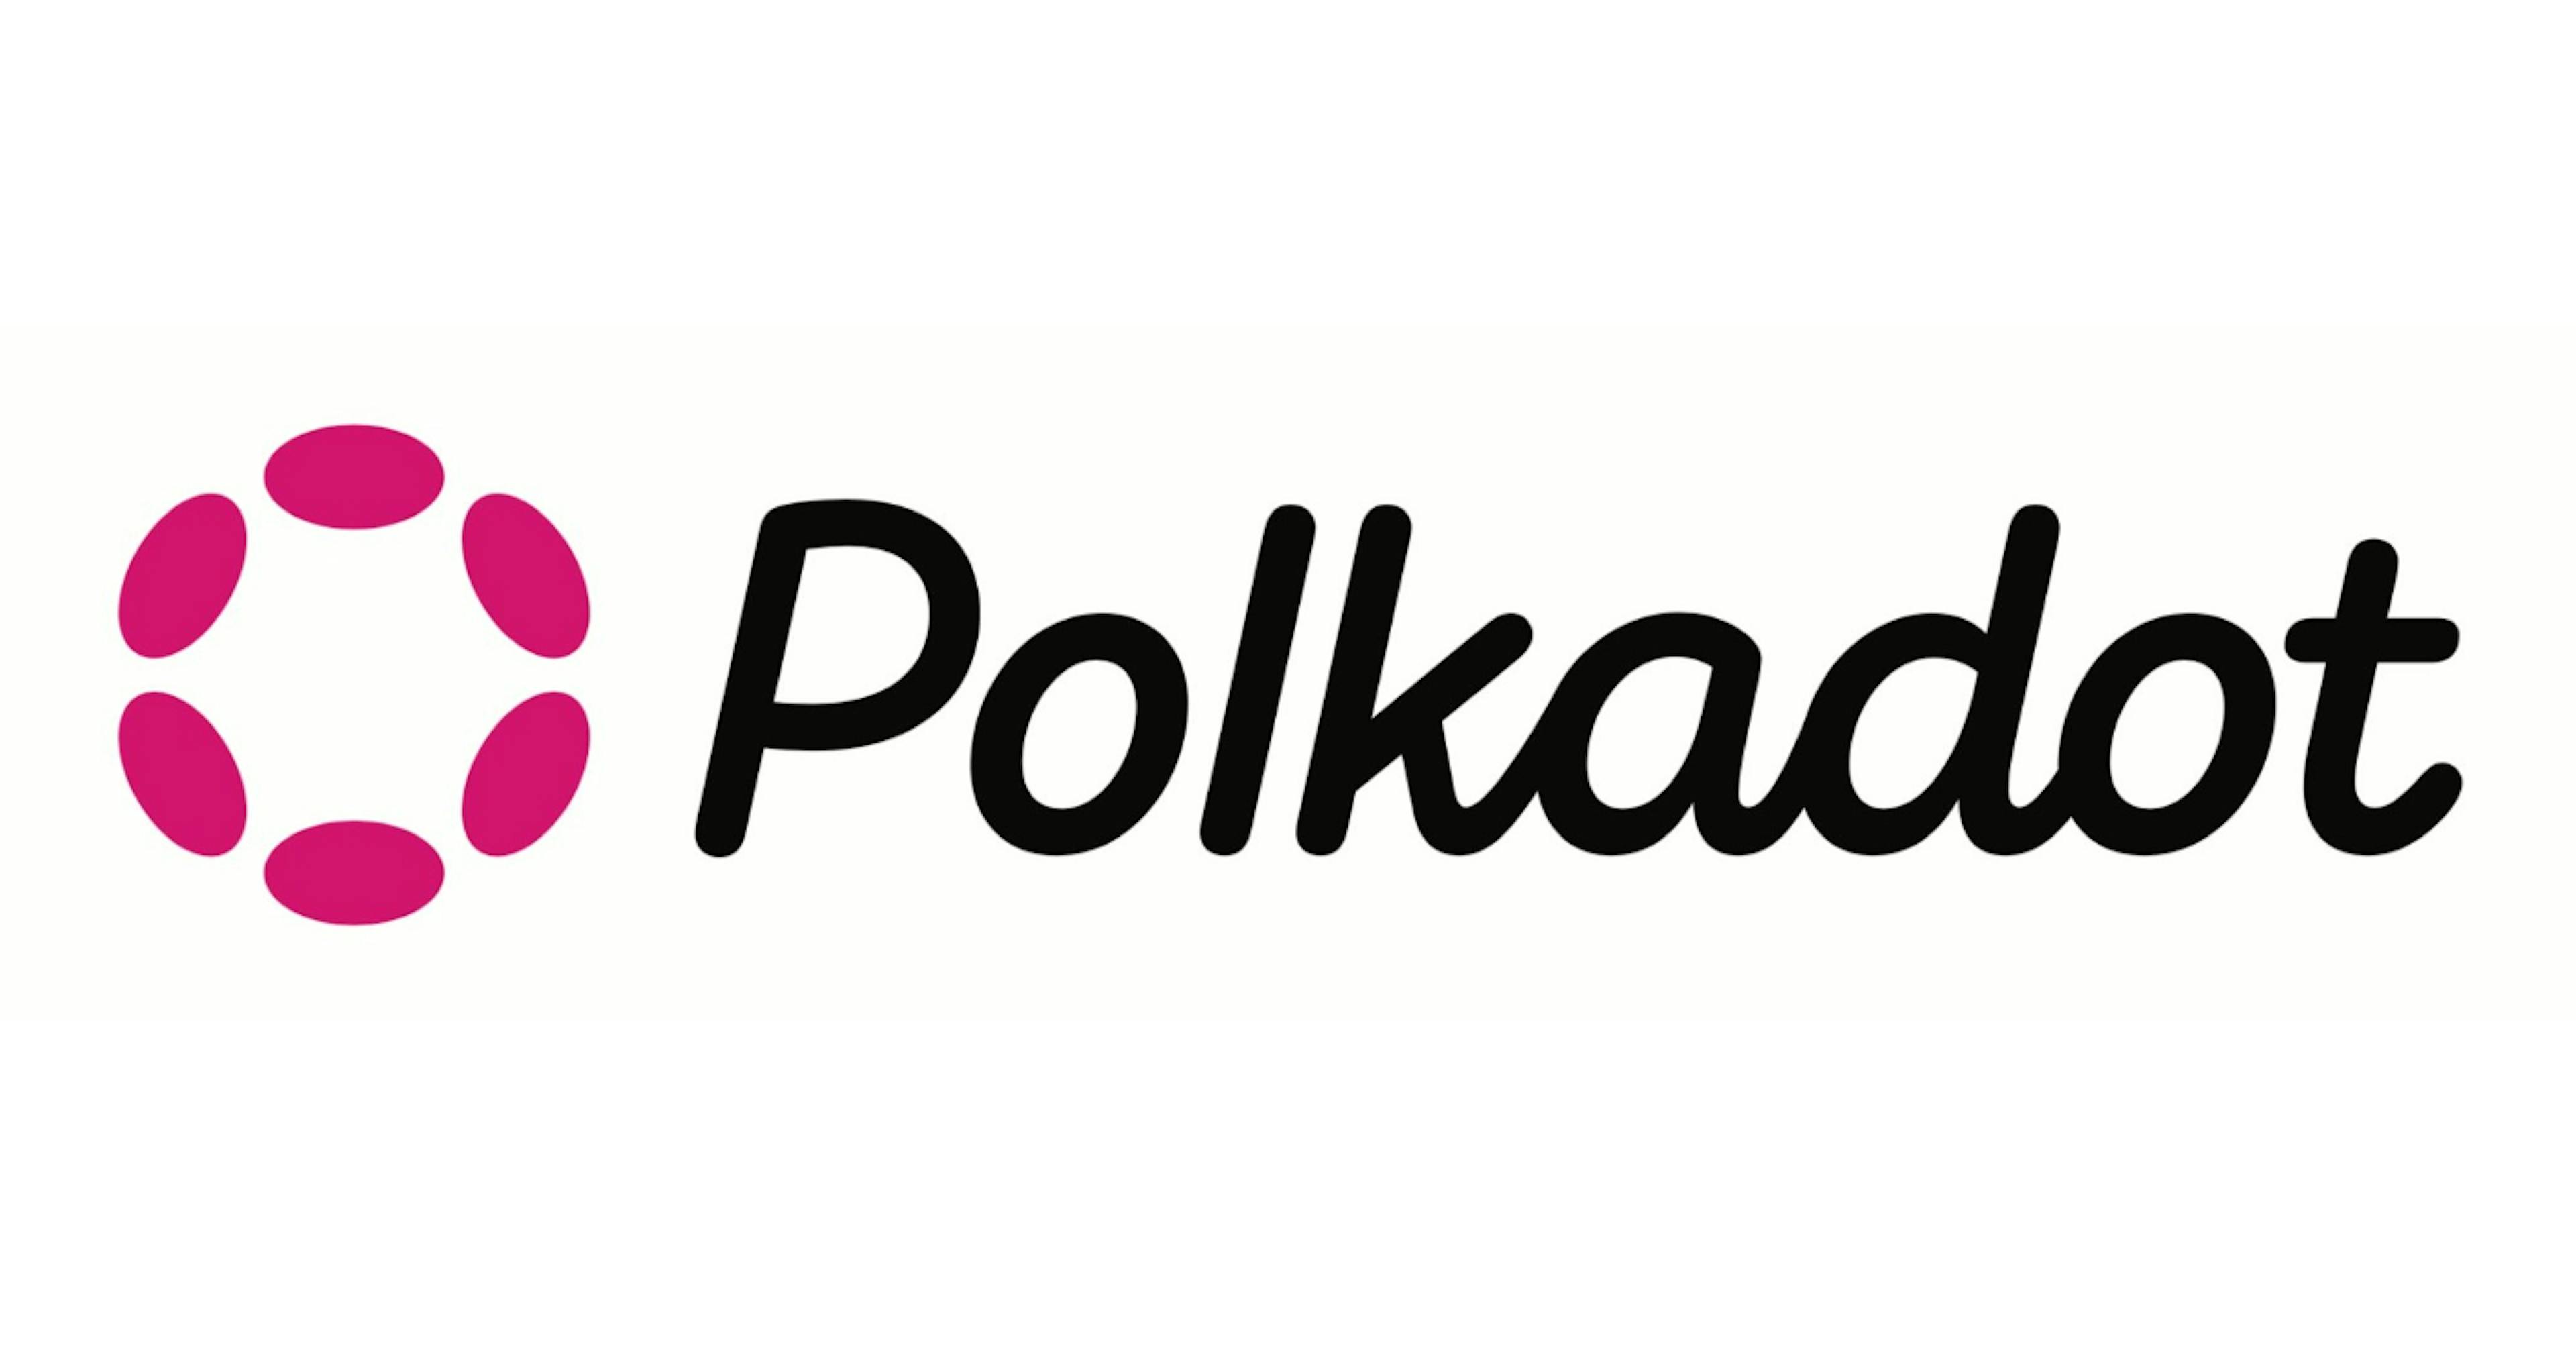 featured image - Una guía para comprender las capas 0: cómo funciona el ecosistema de Polkadot